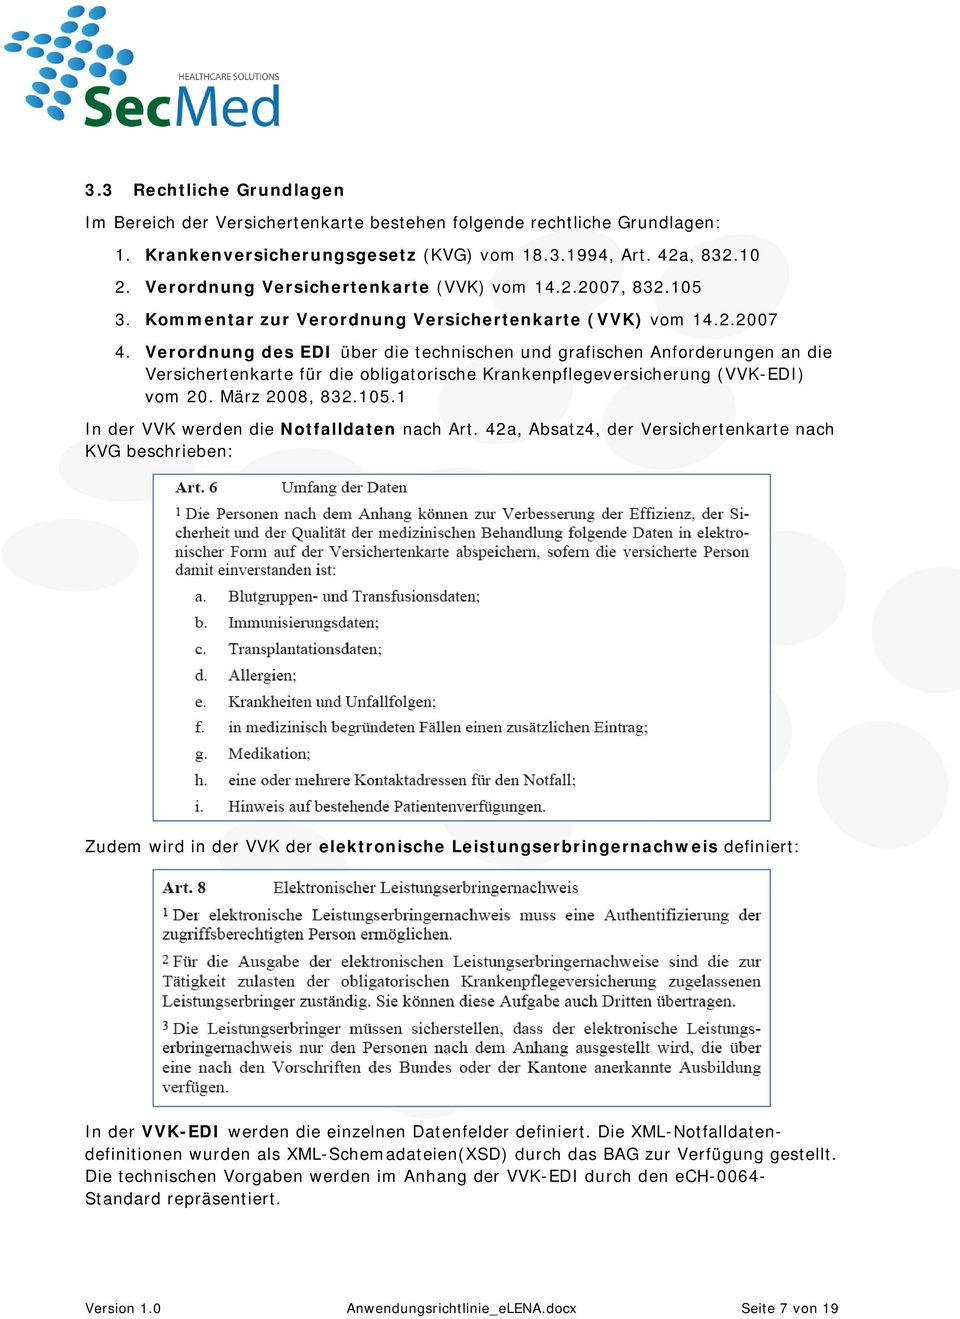 Verordnung des EDI über die technischen und grafischen Anforderungen an die Versichertenkarte für die obligatorische Krankenpflegeversicherung (VVK-EDI) vom 20. März 2008, 832.105.